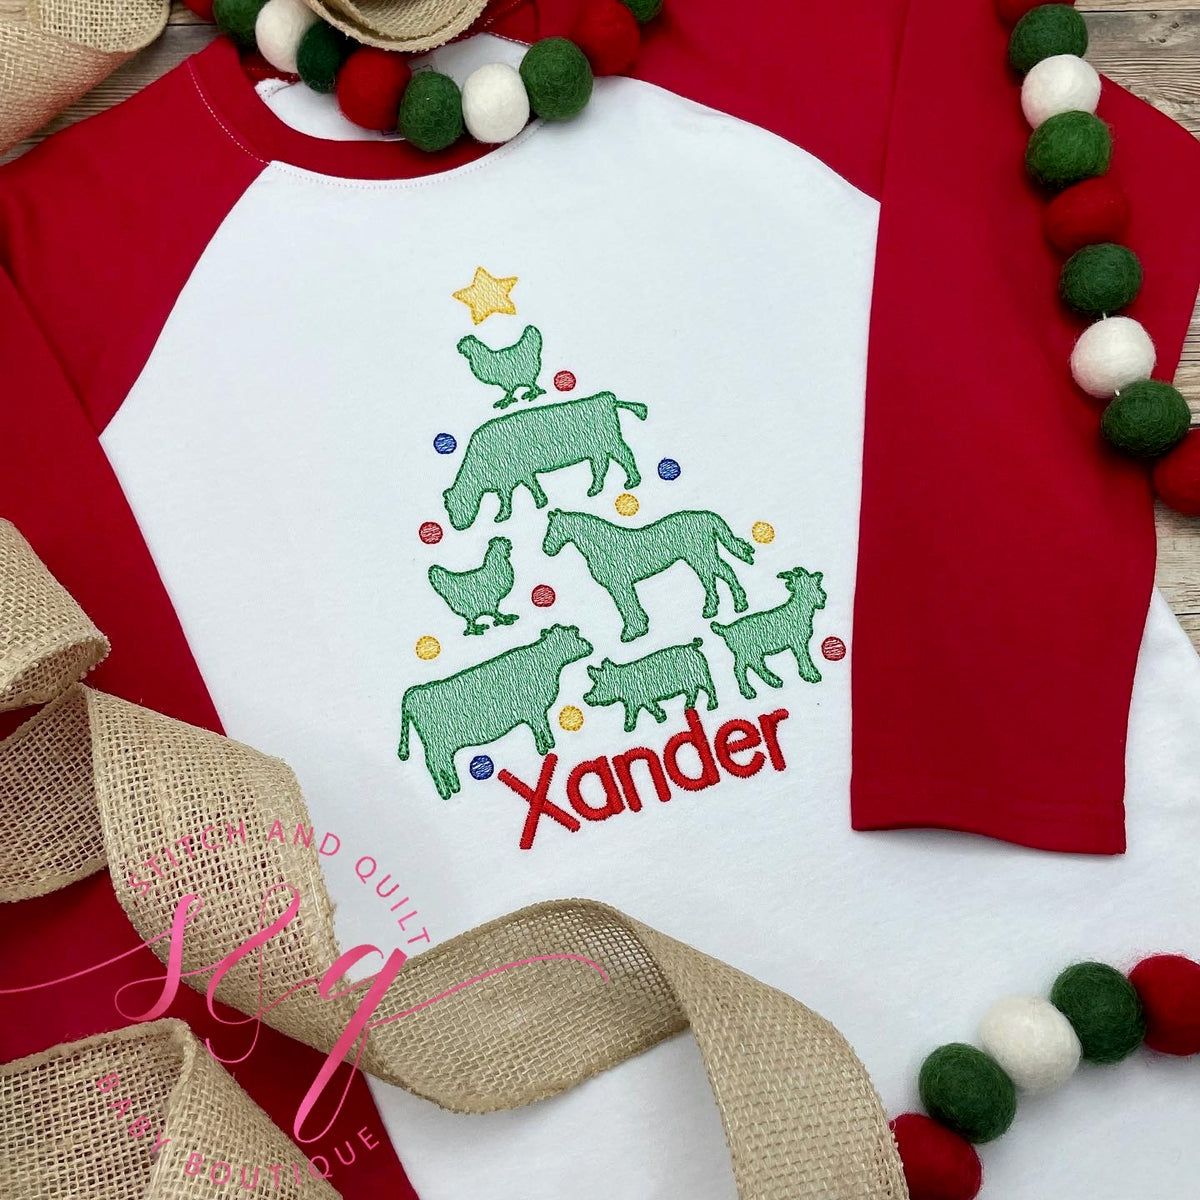 Boys Toddler and Infant Christmas Shirt, Holiday shirt for boys, Christmas shirt for boys, Barnyard Christmas Farm Christmas